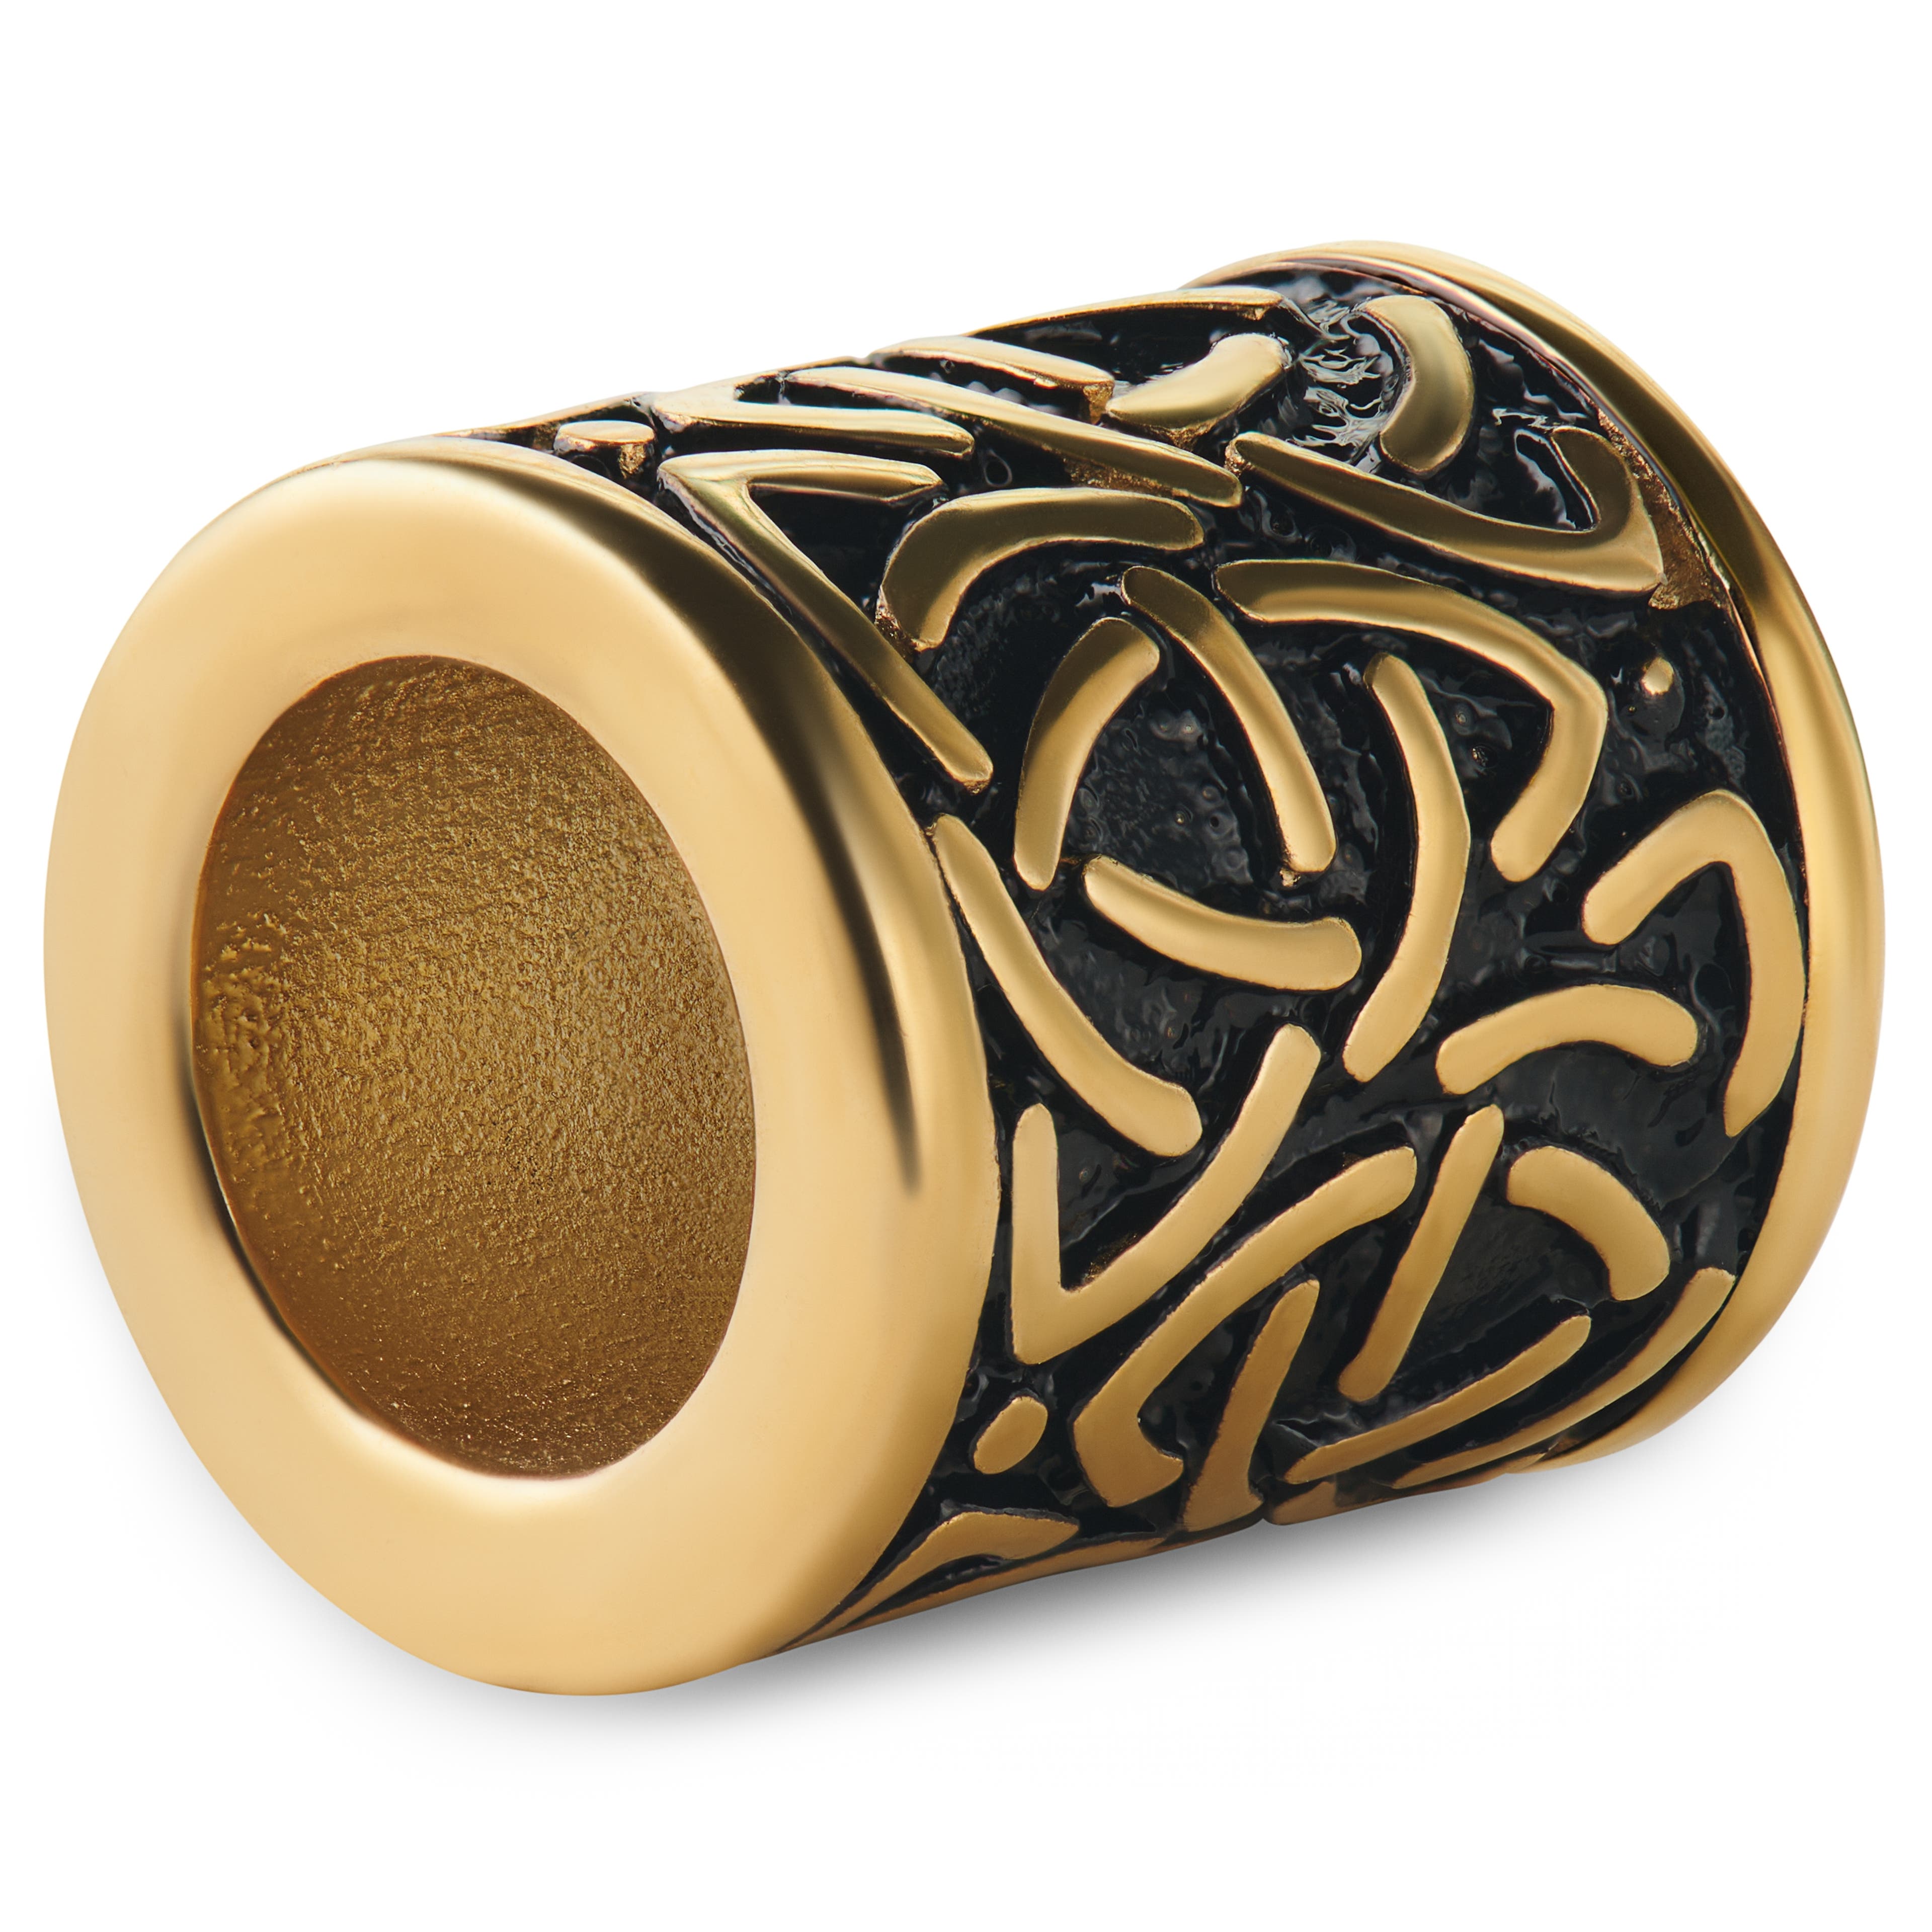 Arany tónusú szakállgyűrű, kelta csomós mintával